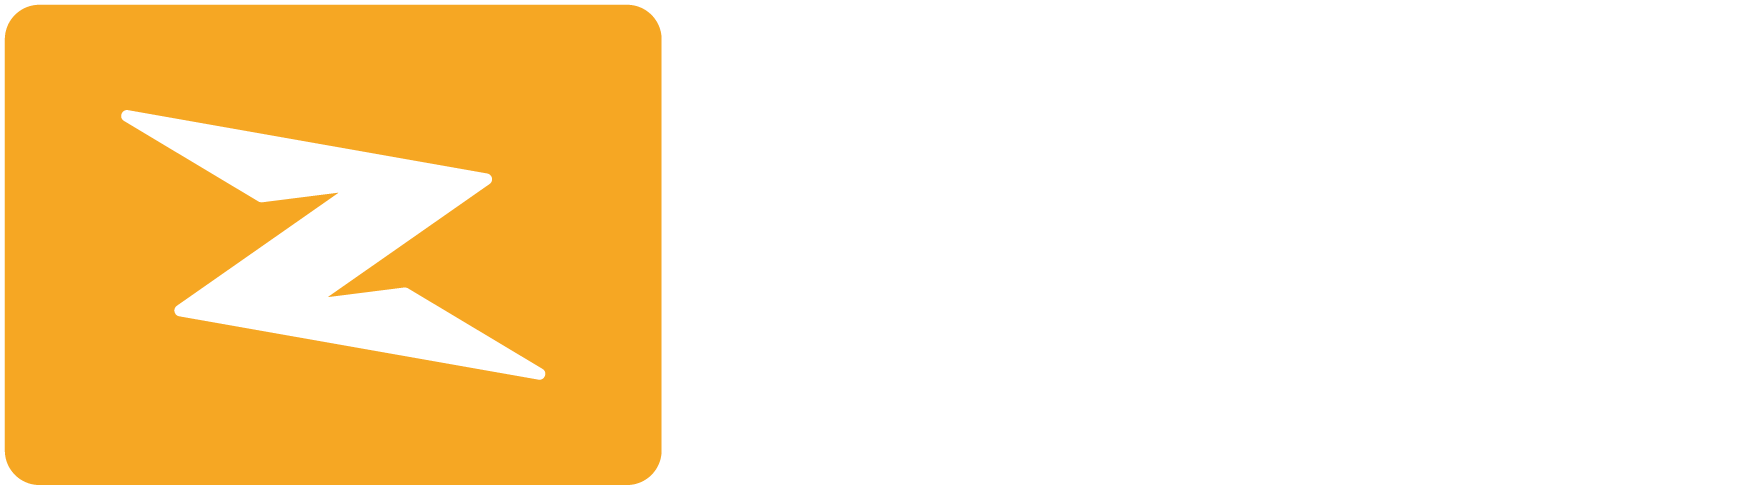 Zoyz logo